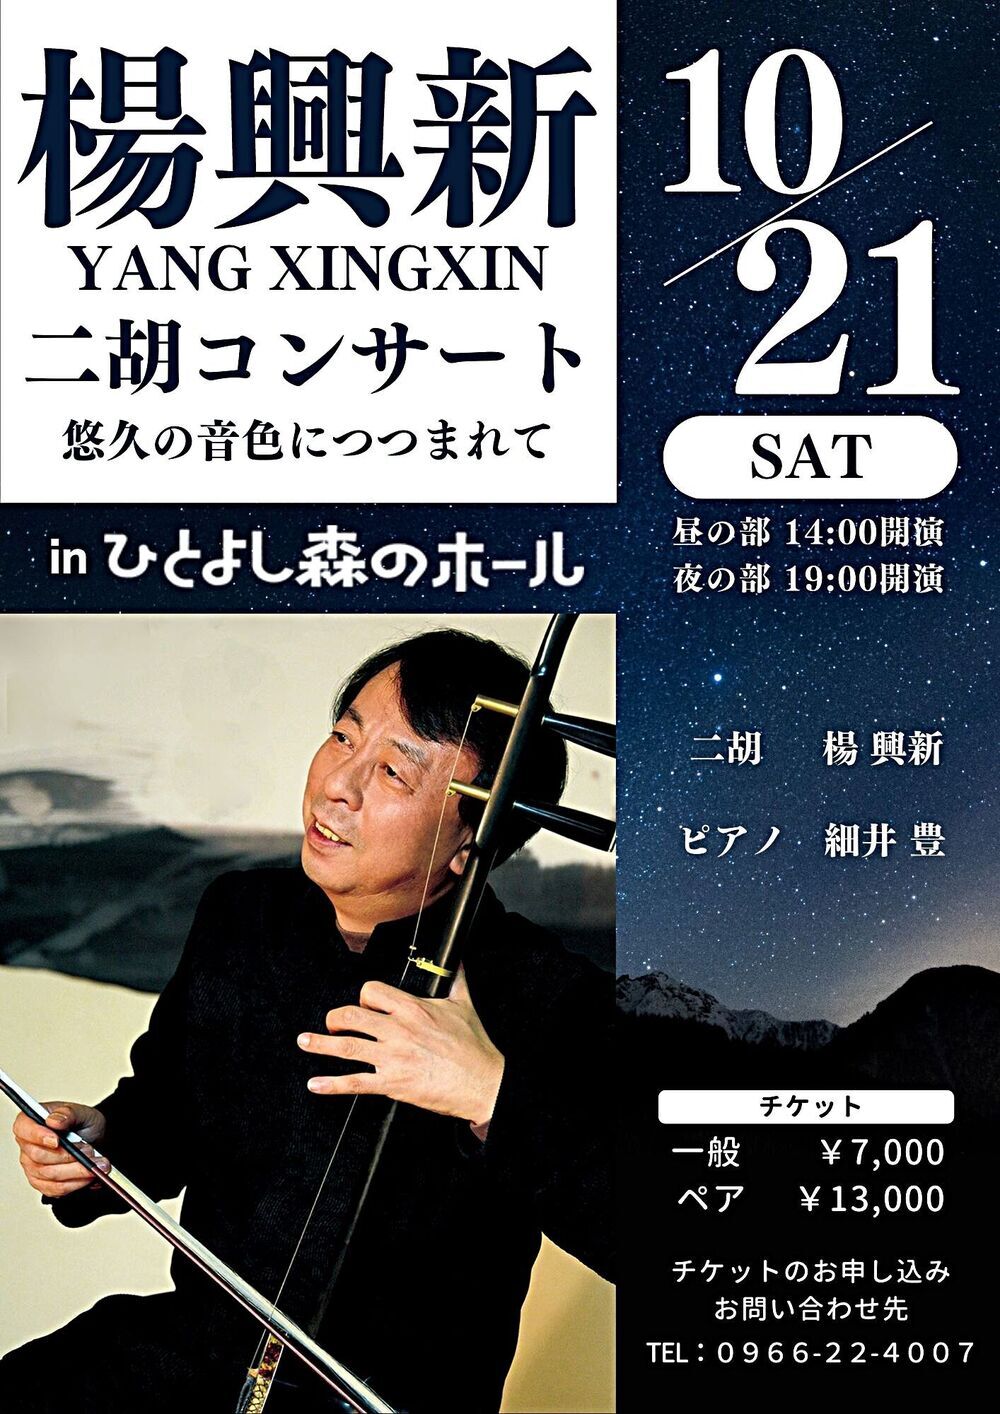 Concerto Yang Xingxin YANG XINGXIN Erhu